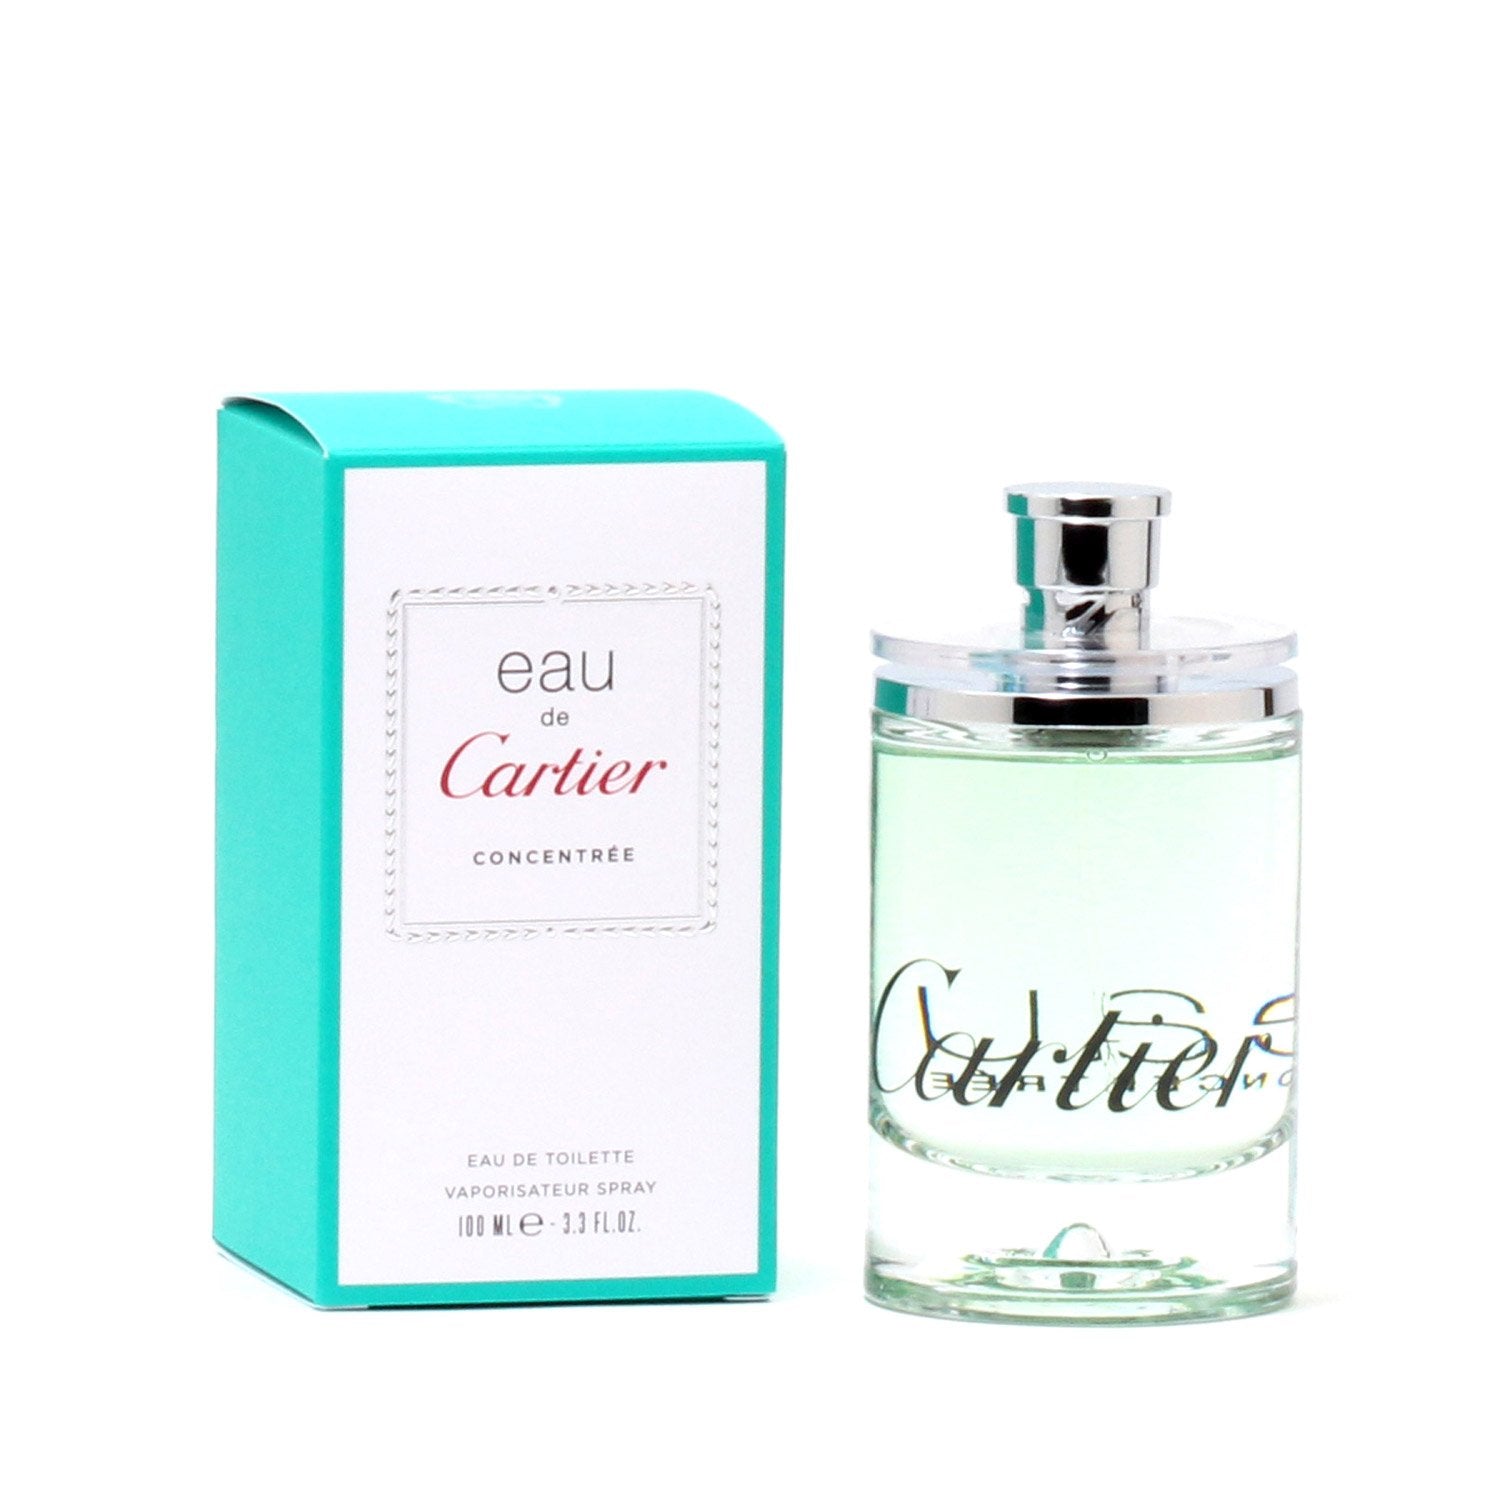 Perfume - EAU DE CARTIER CONCENTRATE FOR WOMEN BY CARTIER - EAU DE TOILETTE  SPRAY, 3.3 OZ